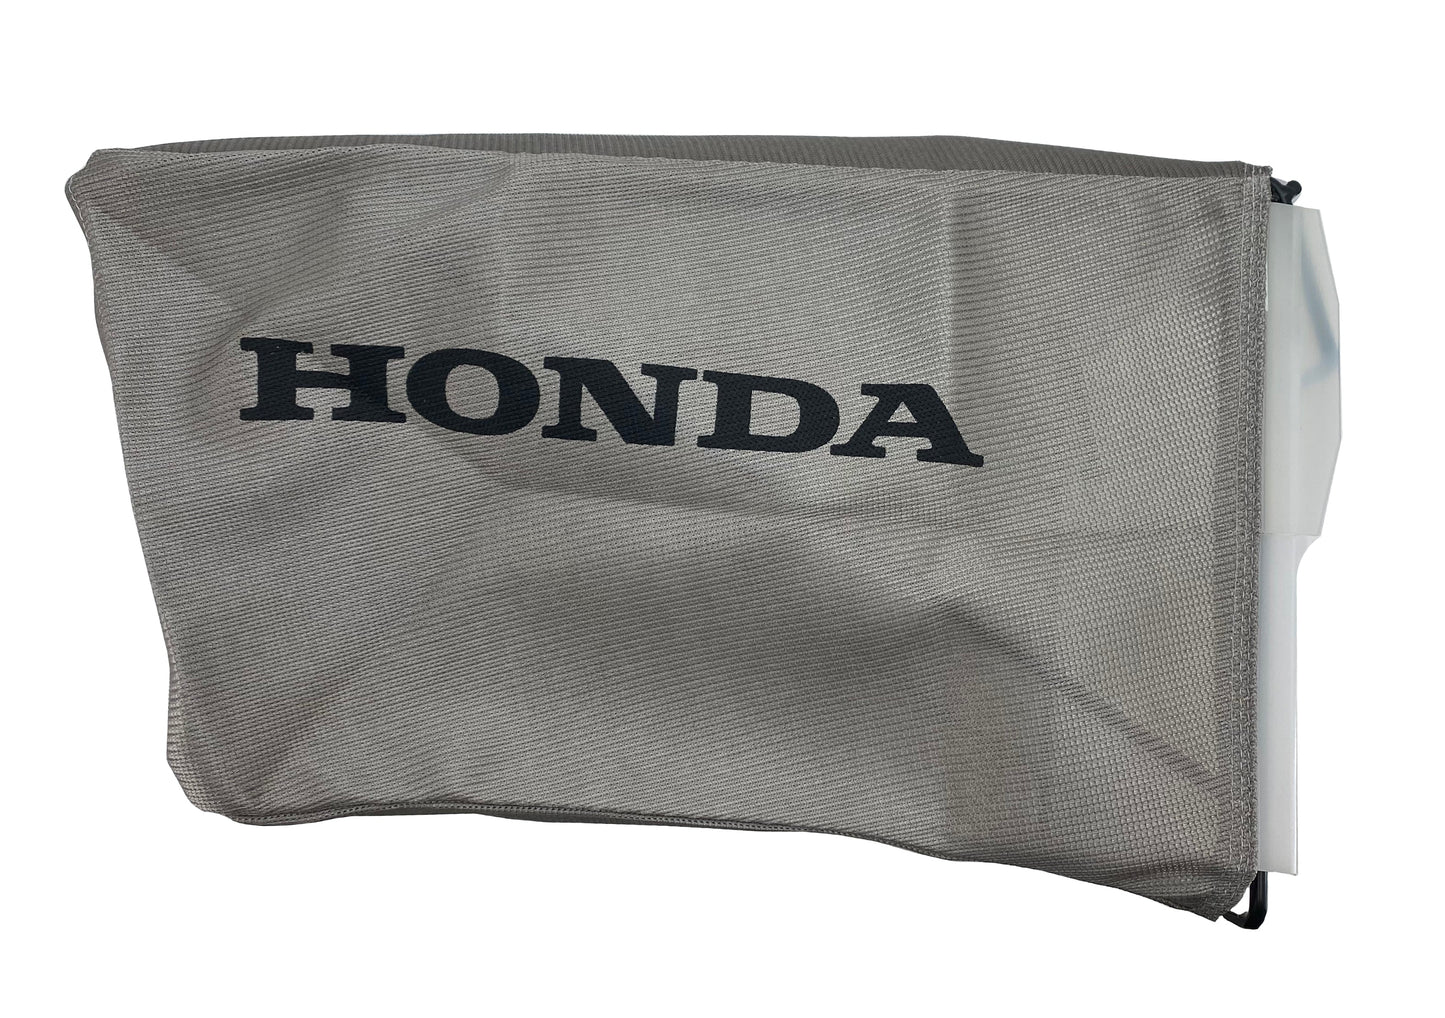 Honda Original Equipment Fabric Grass Bag & Bag Frame Set - 81320-VG4-A10 & 81330-VG4-020